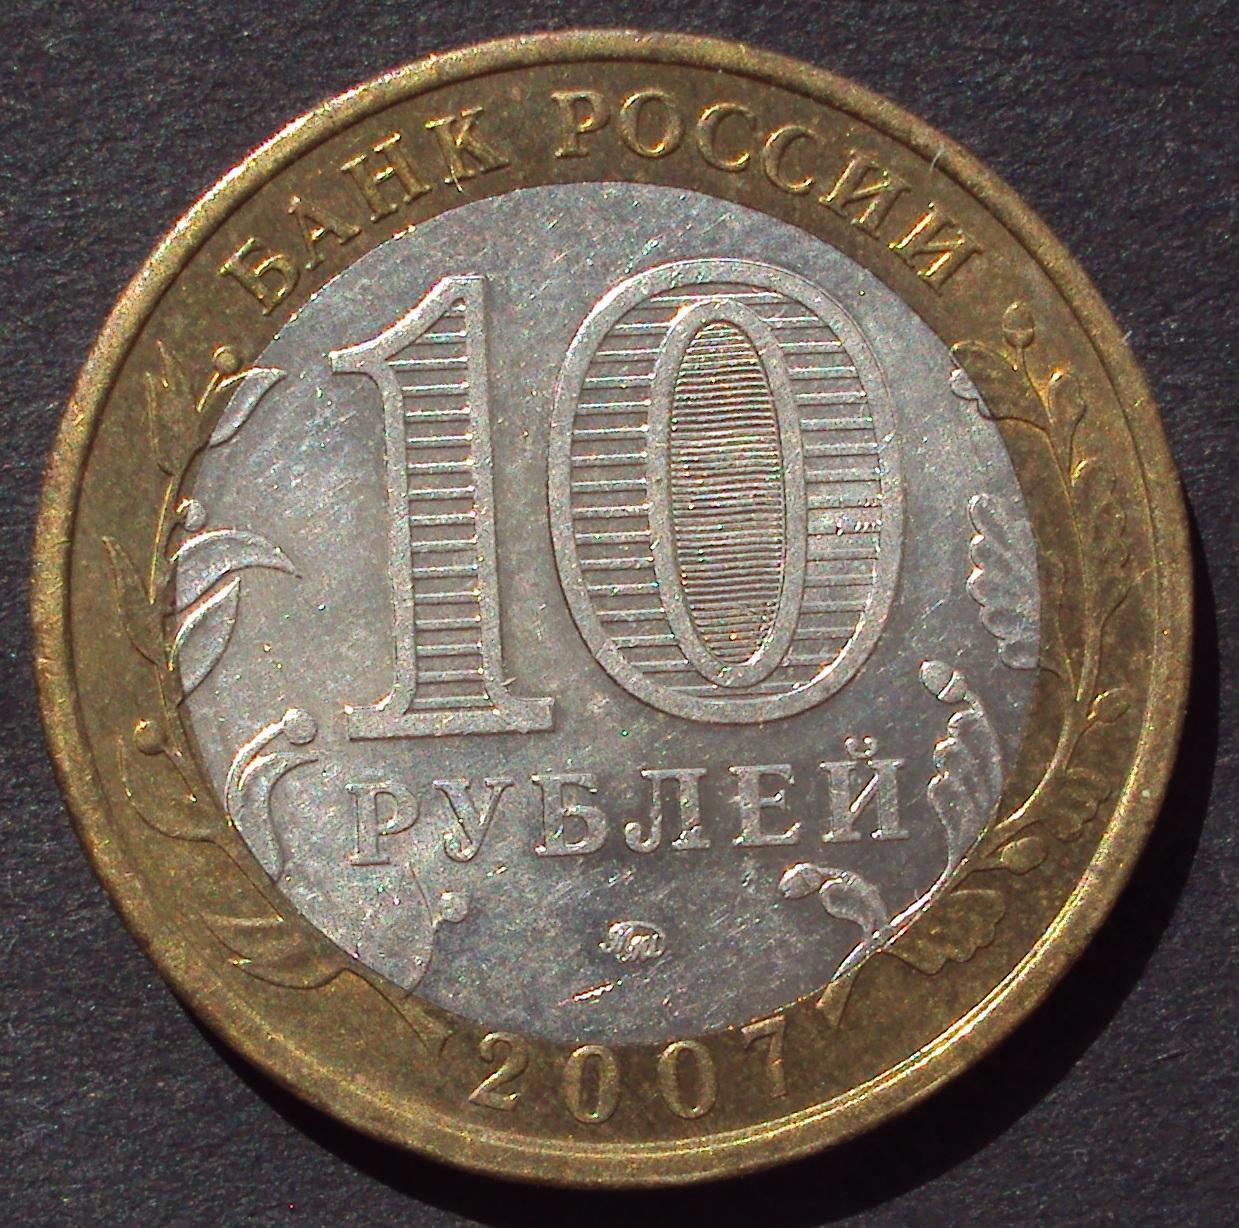 10 рублей 2007 год! Липецкая область. ММД. (А-33).